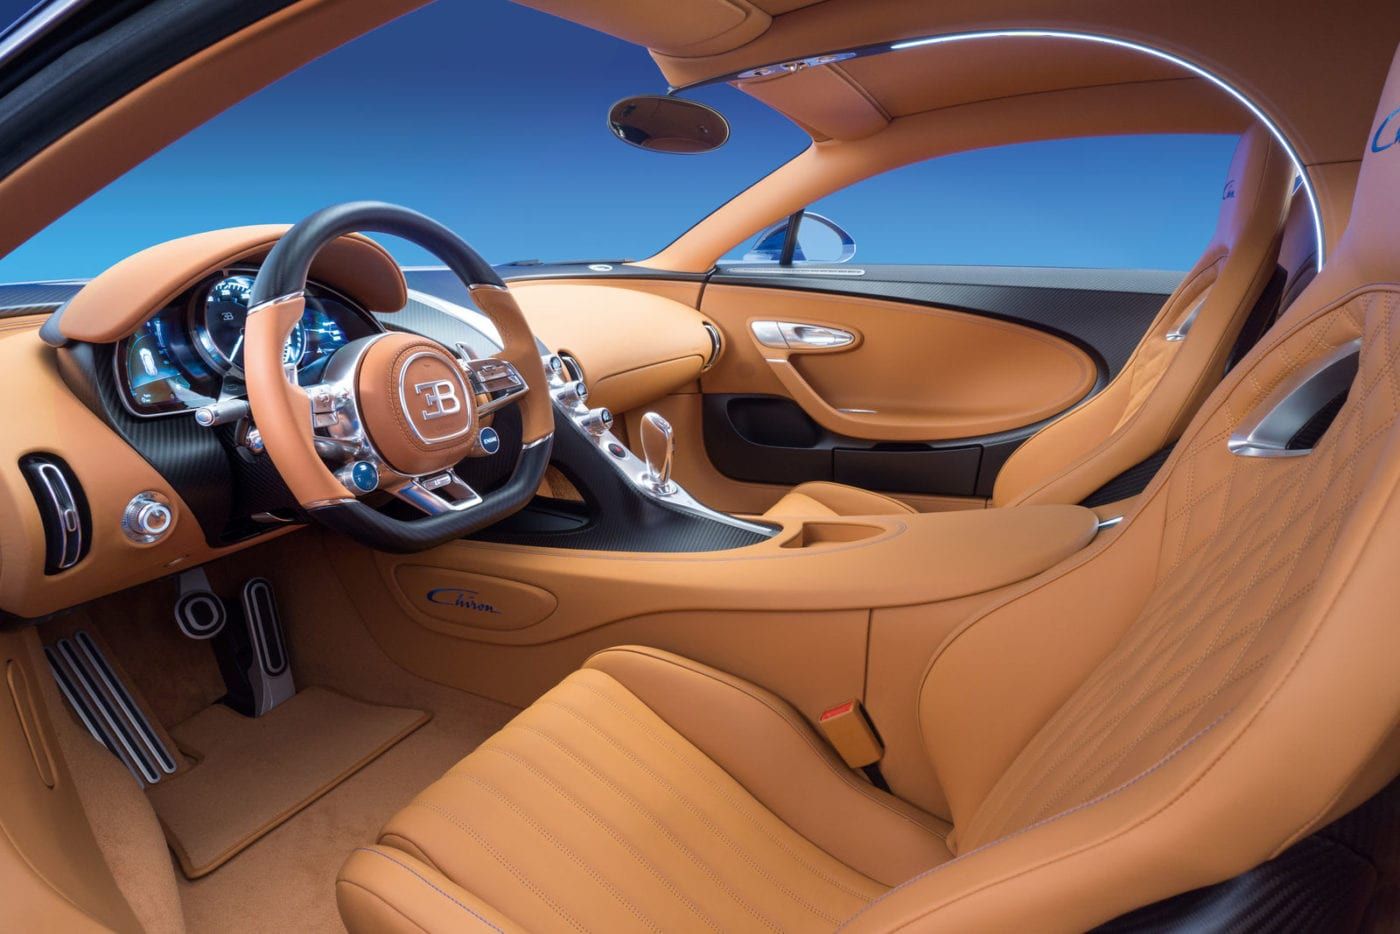 Inside the 2018 Bugatti Chiron kaiki tan leather stitching